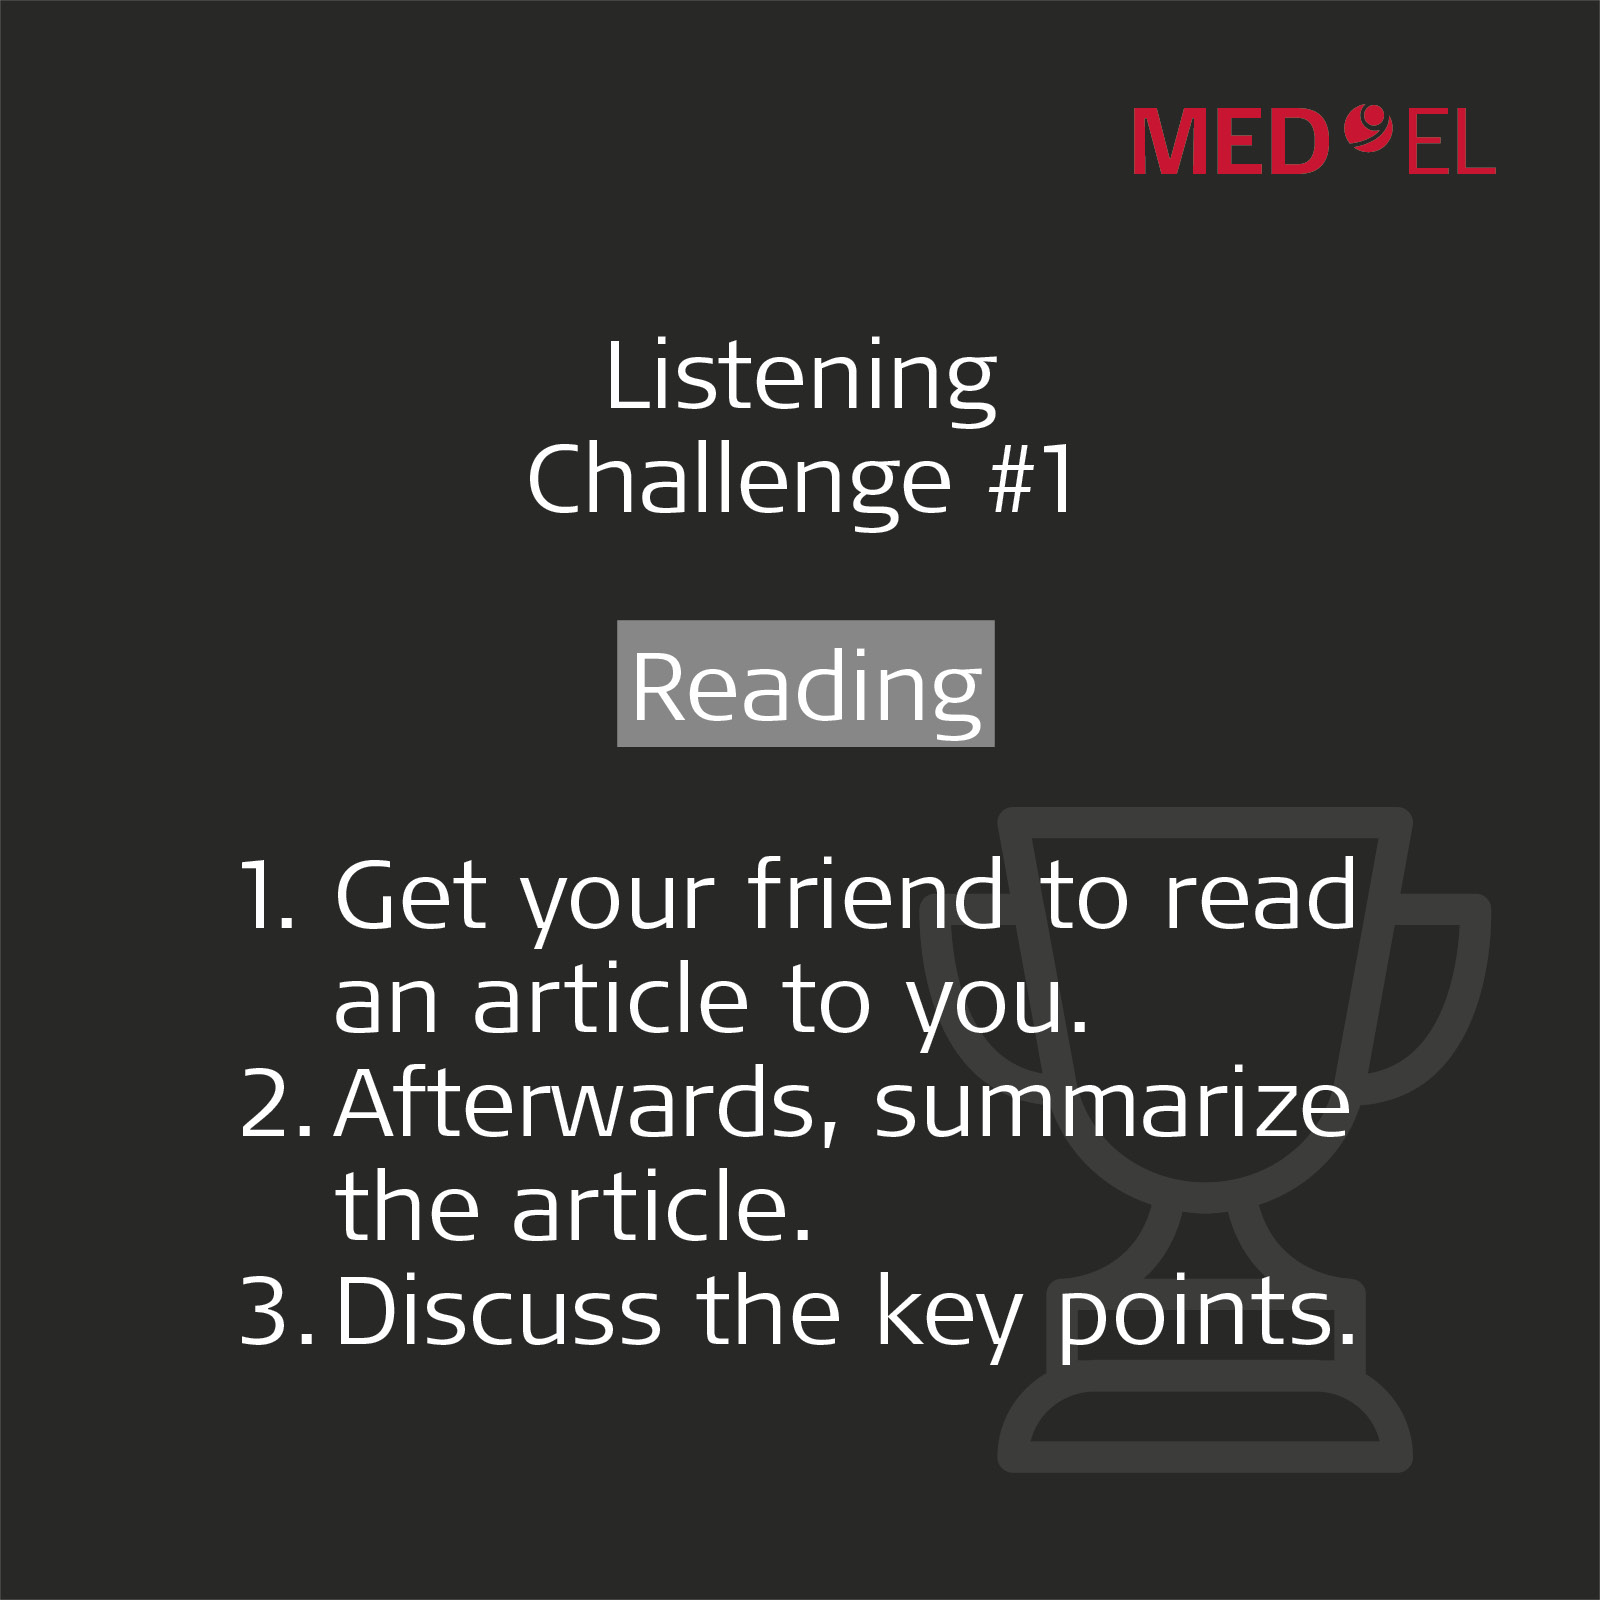 Summary of listening challenge 1